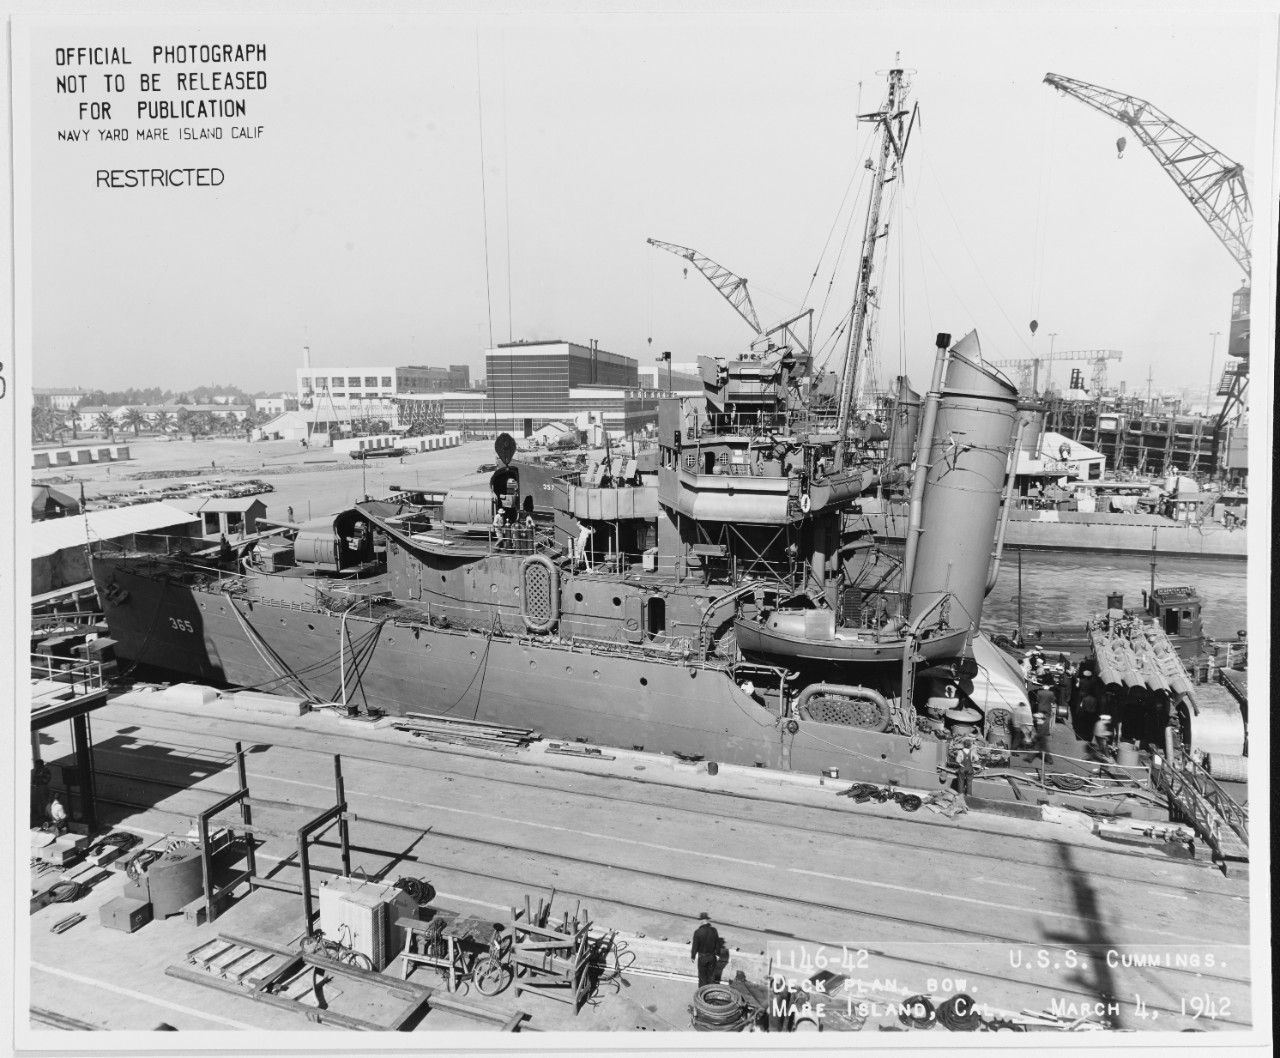 USS Cummings (DD-44) - Wikipedia